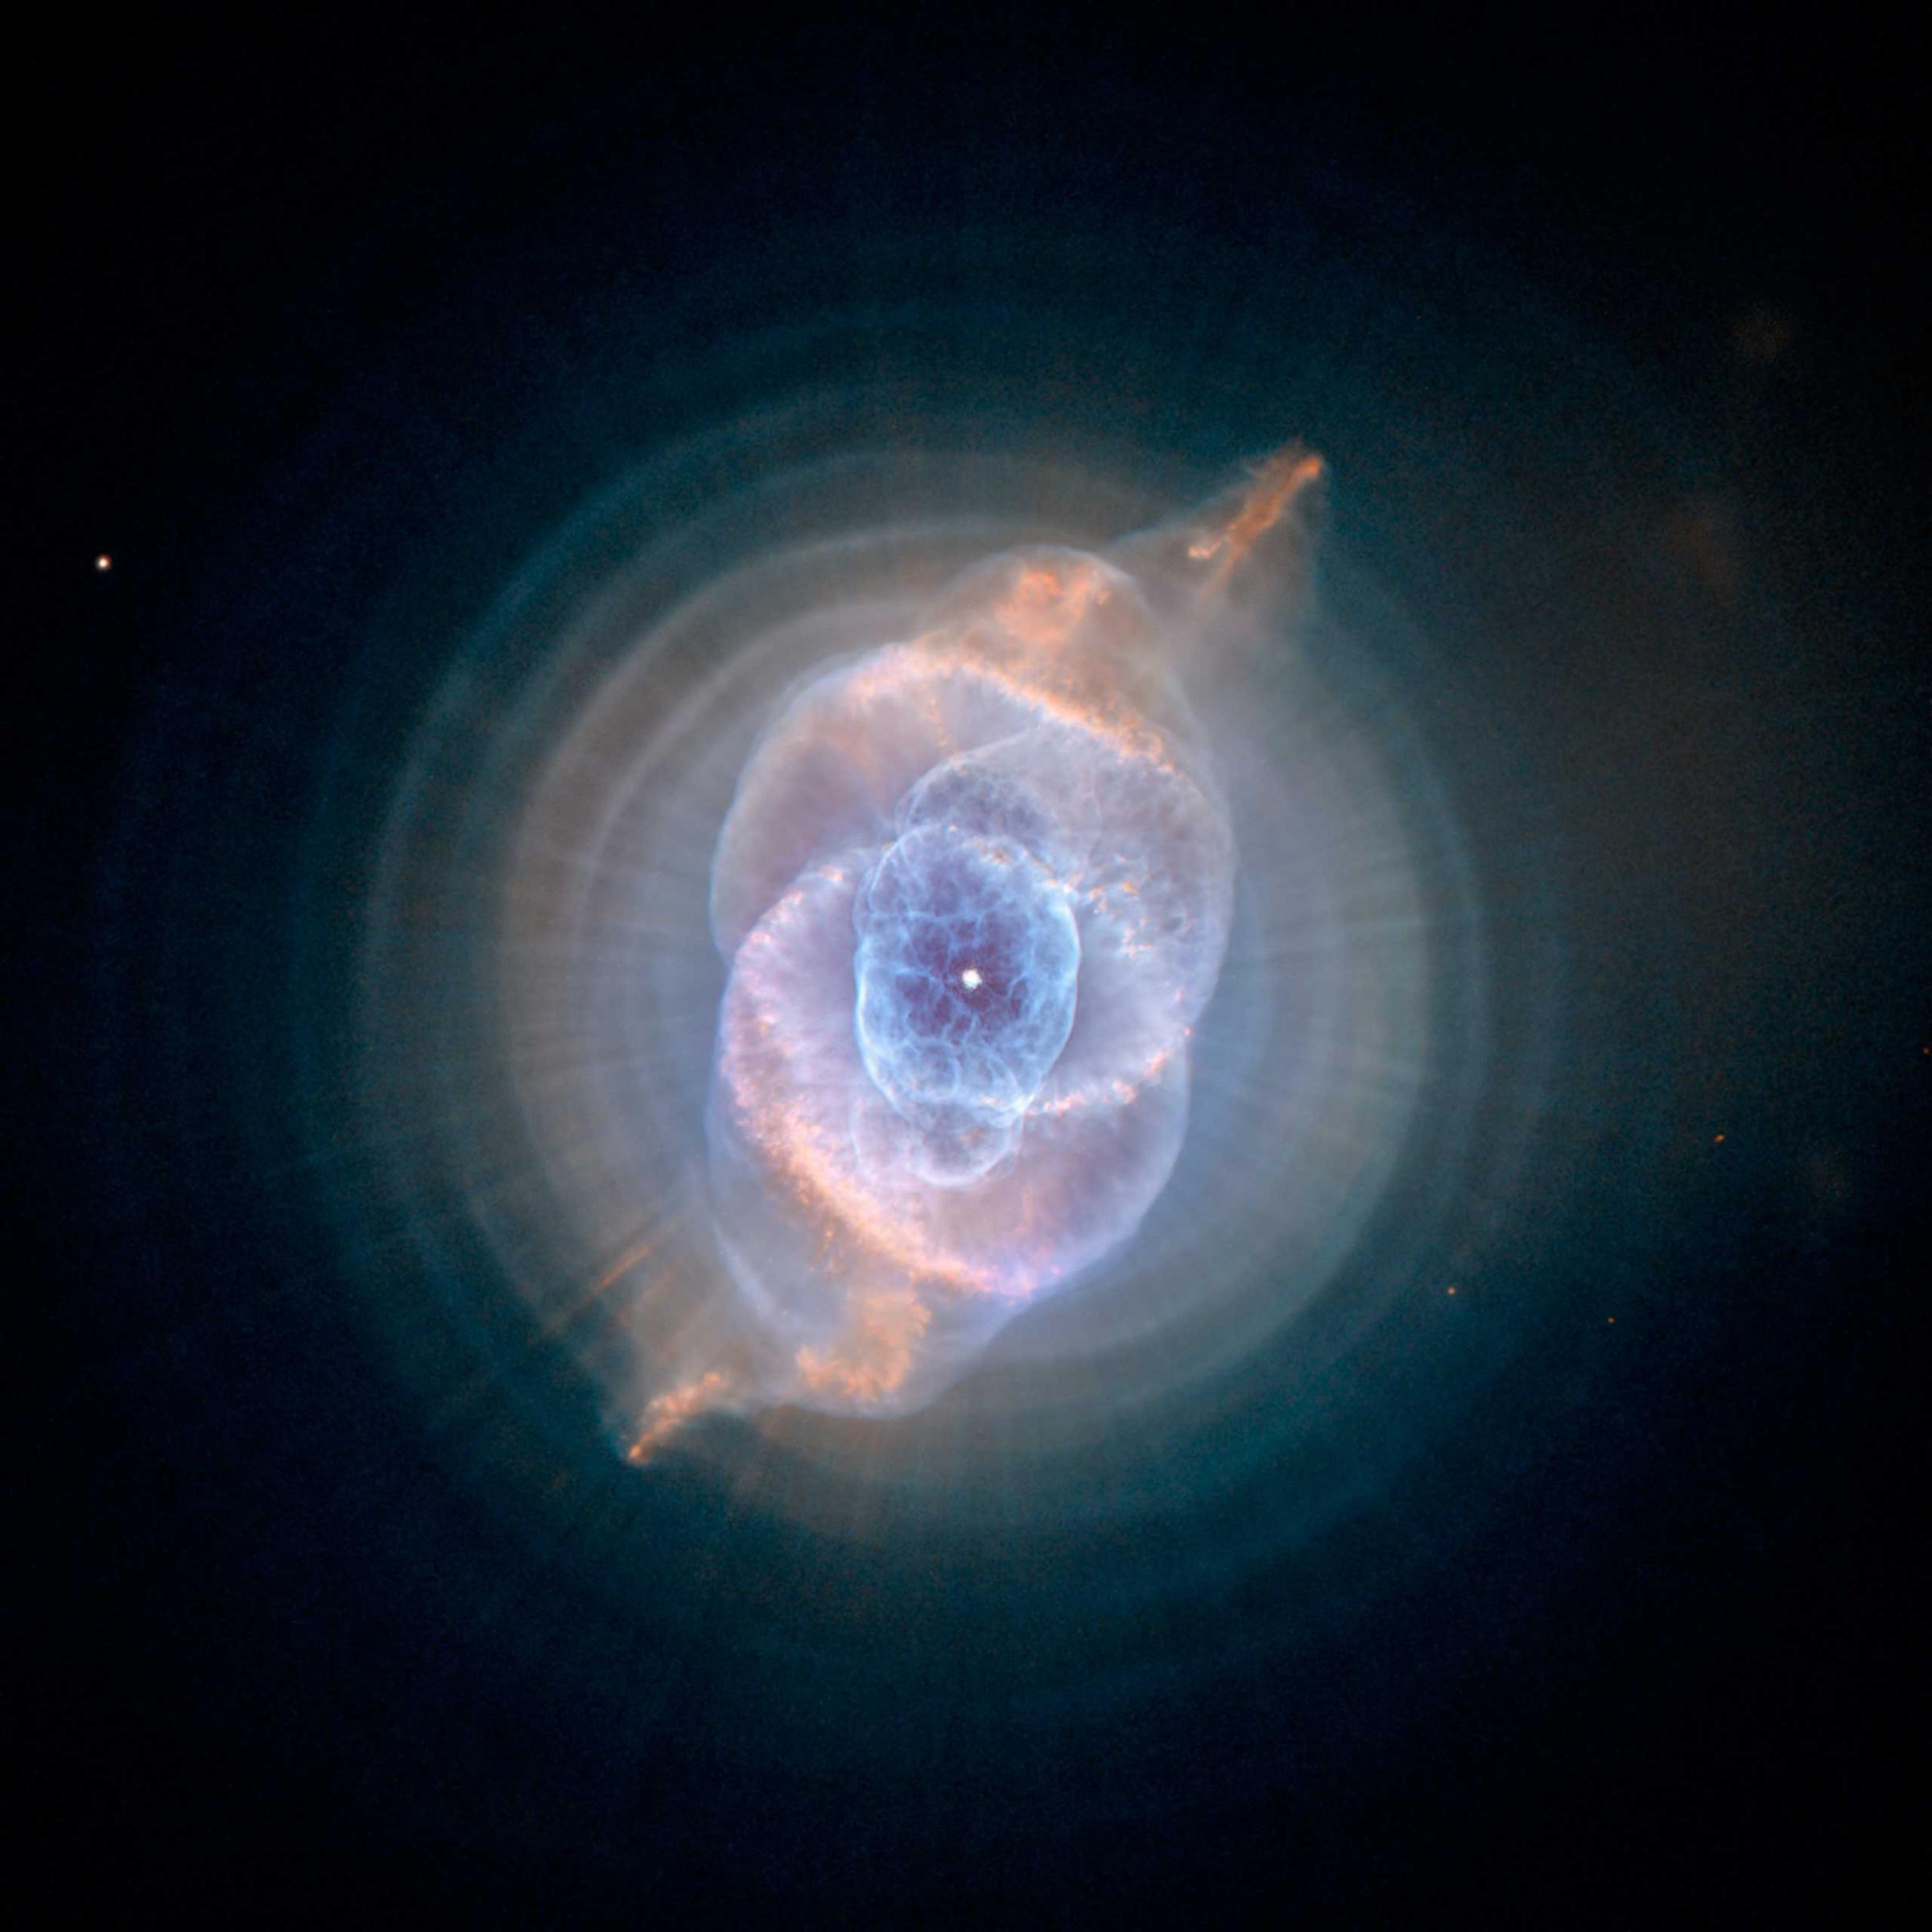 Cat's Eye Nebula